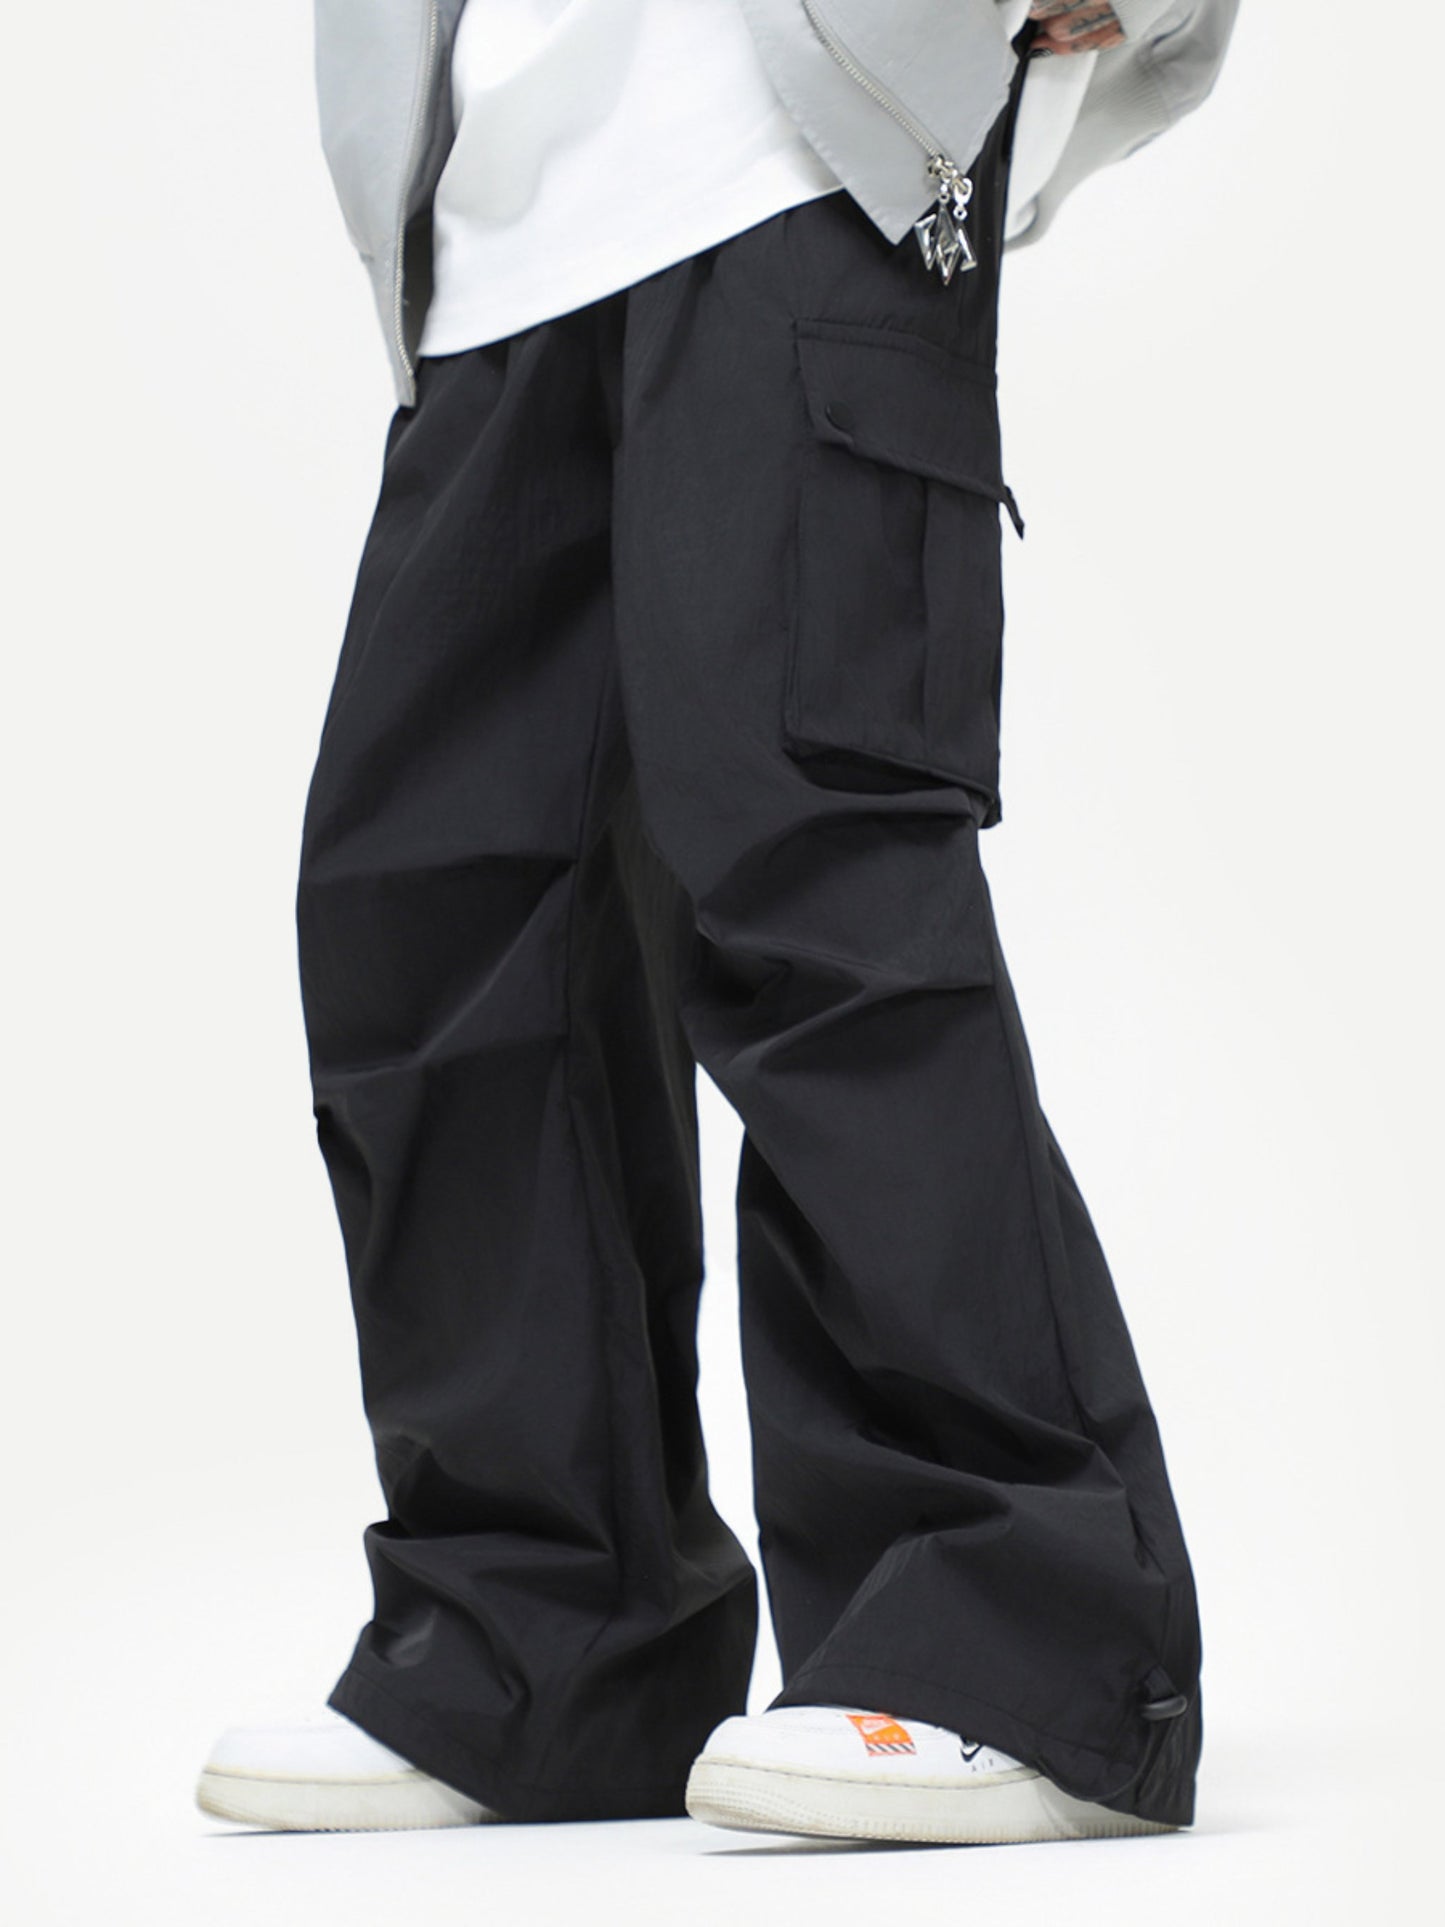 Unisex 3 Colors Black Gray Purple Trousers Pant